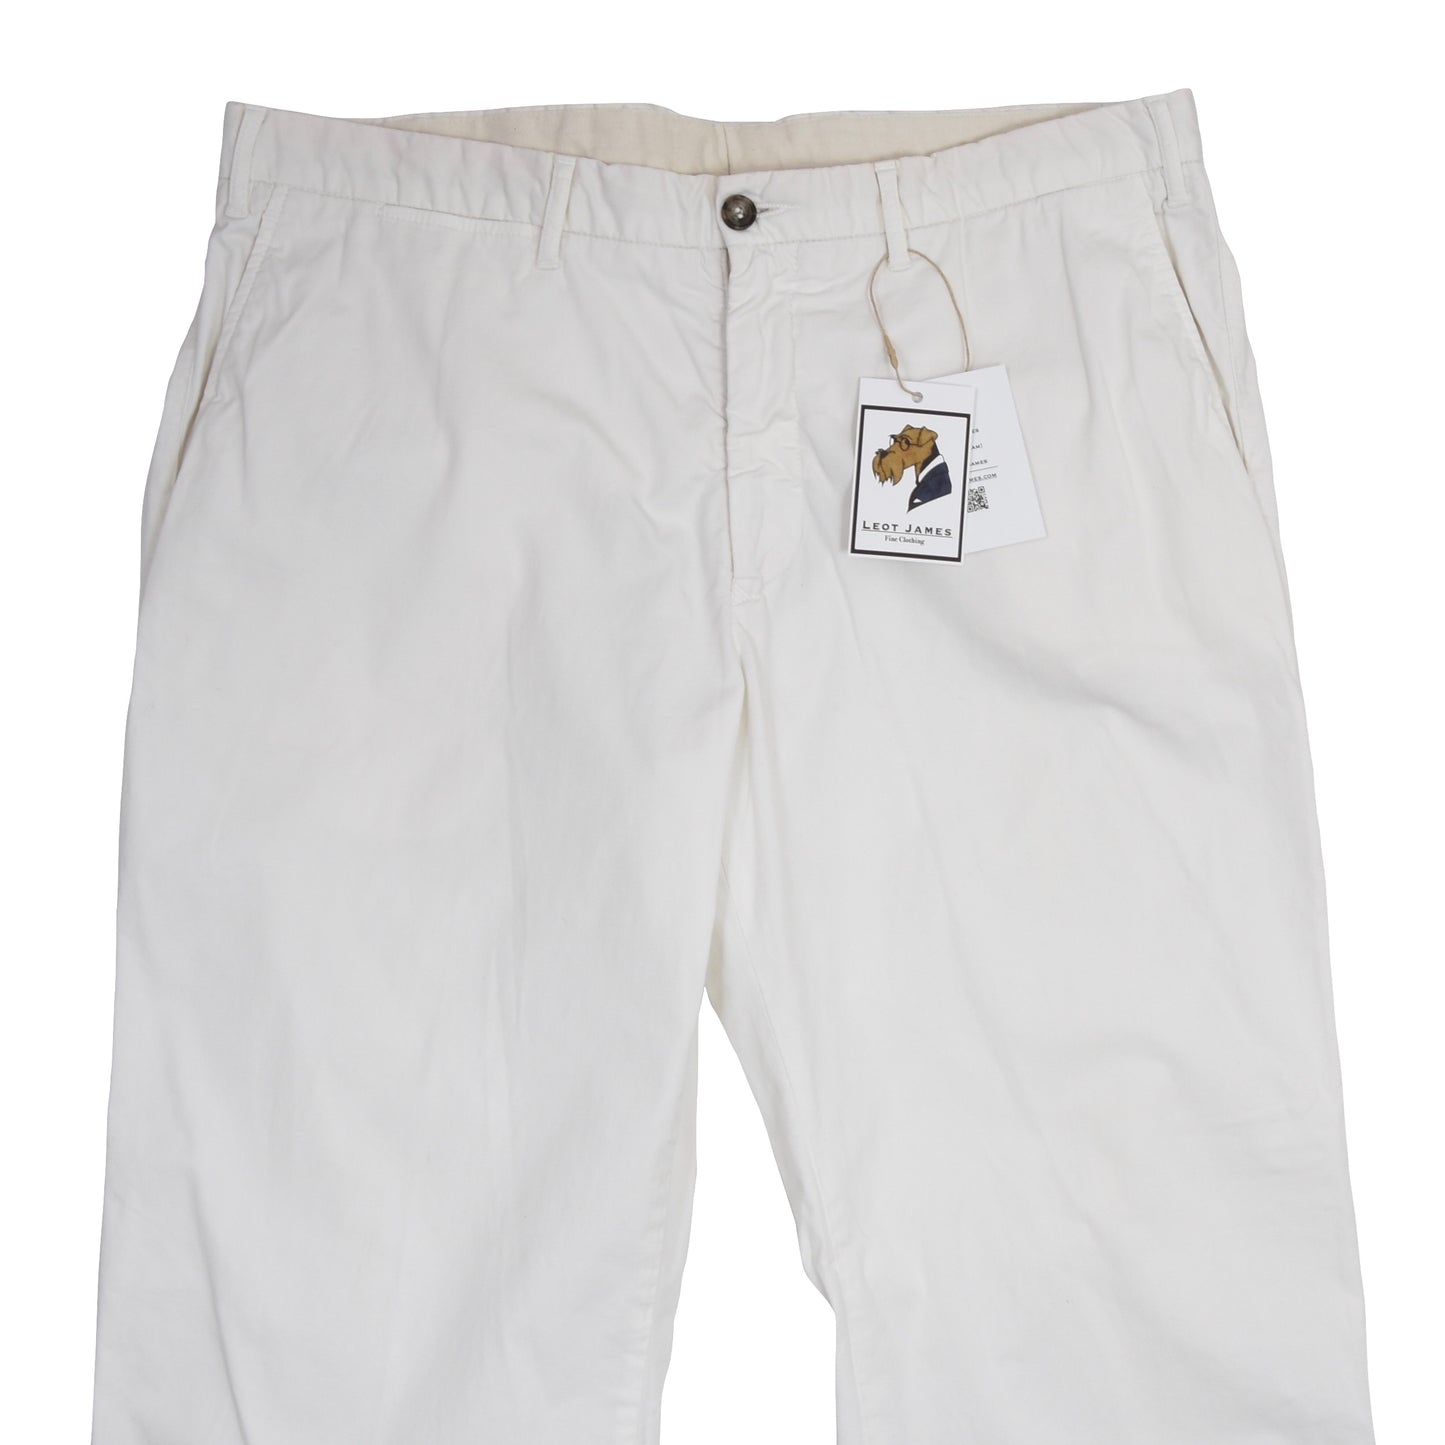 L.B.M. 1911 Cotton Pants Size 56 - Off-White